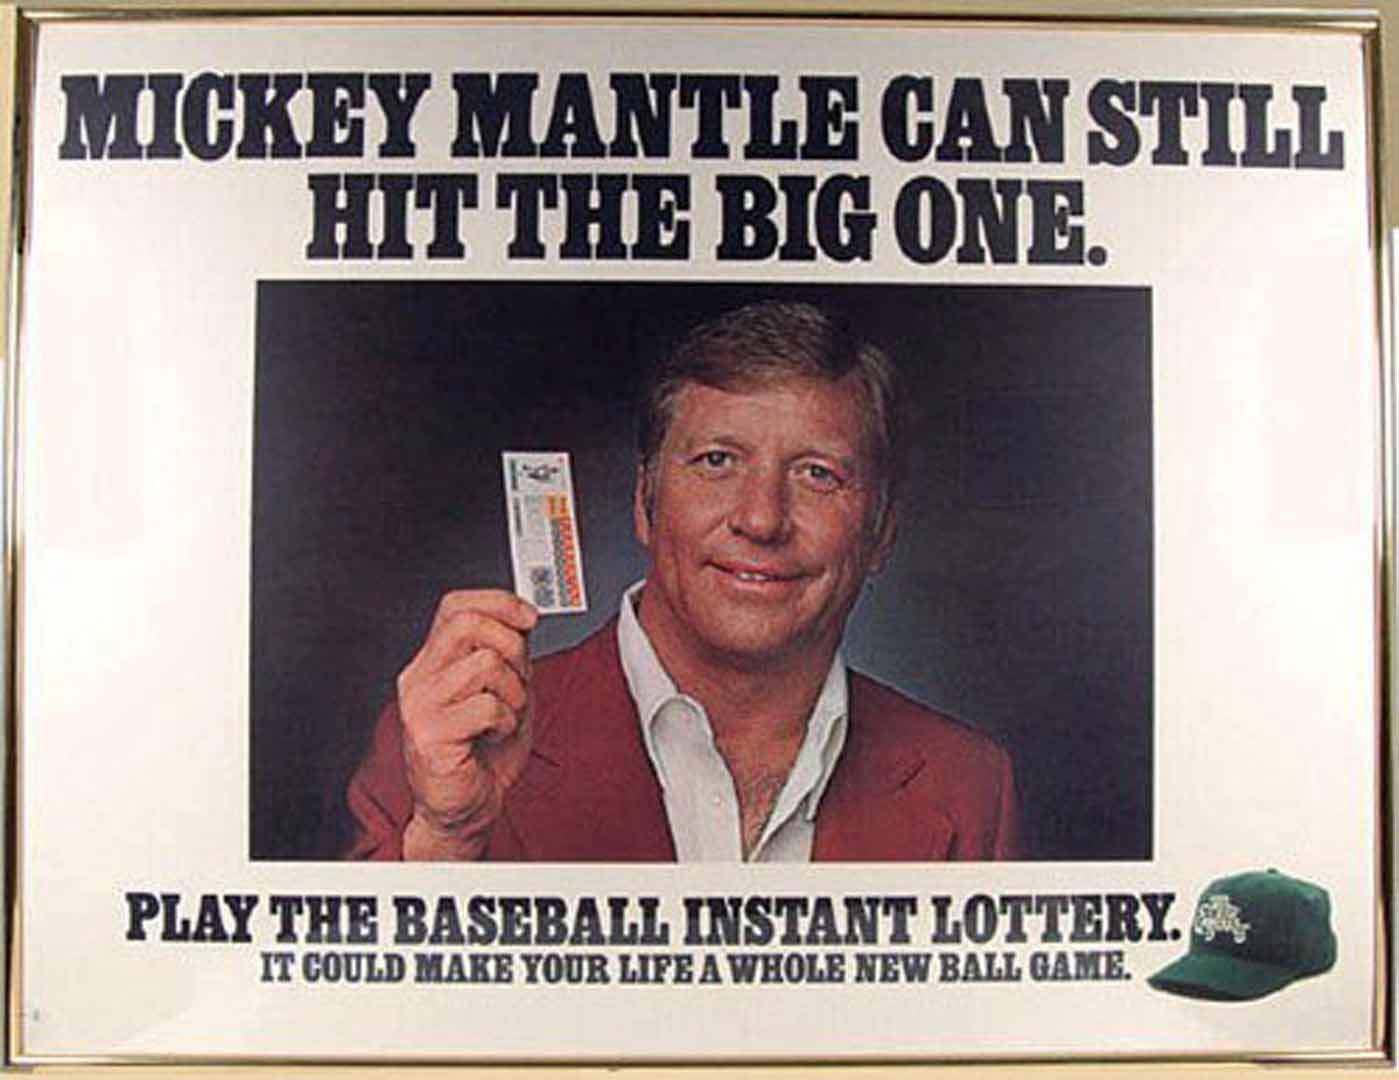 1982 NYS lottery